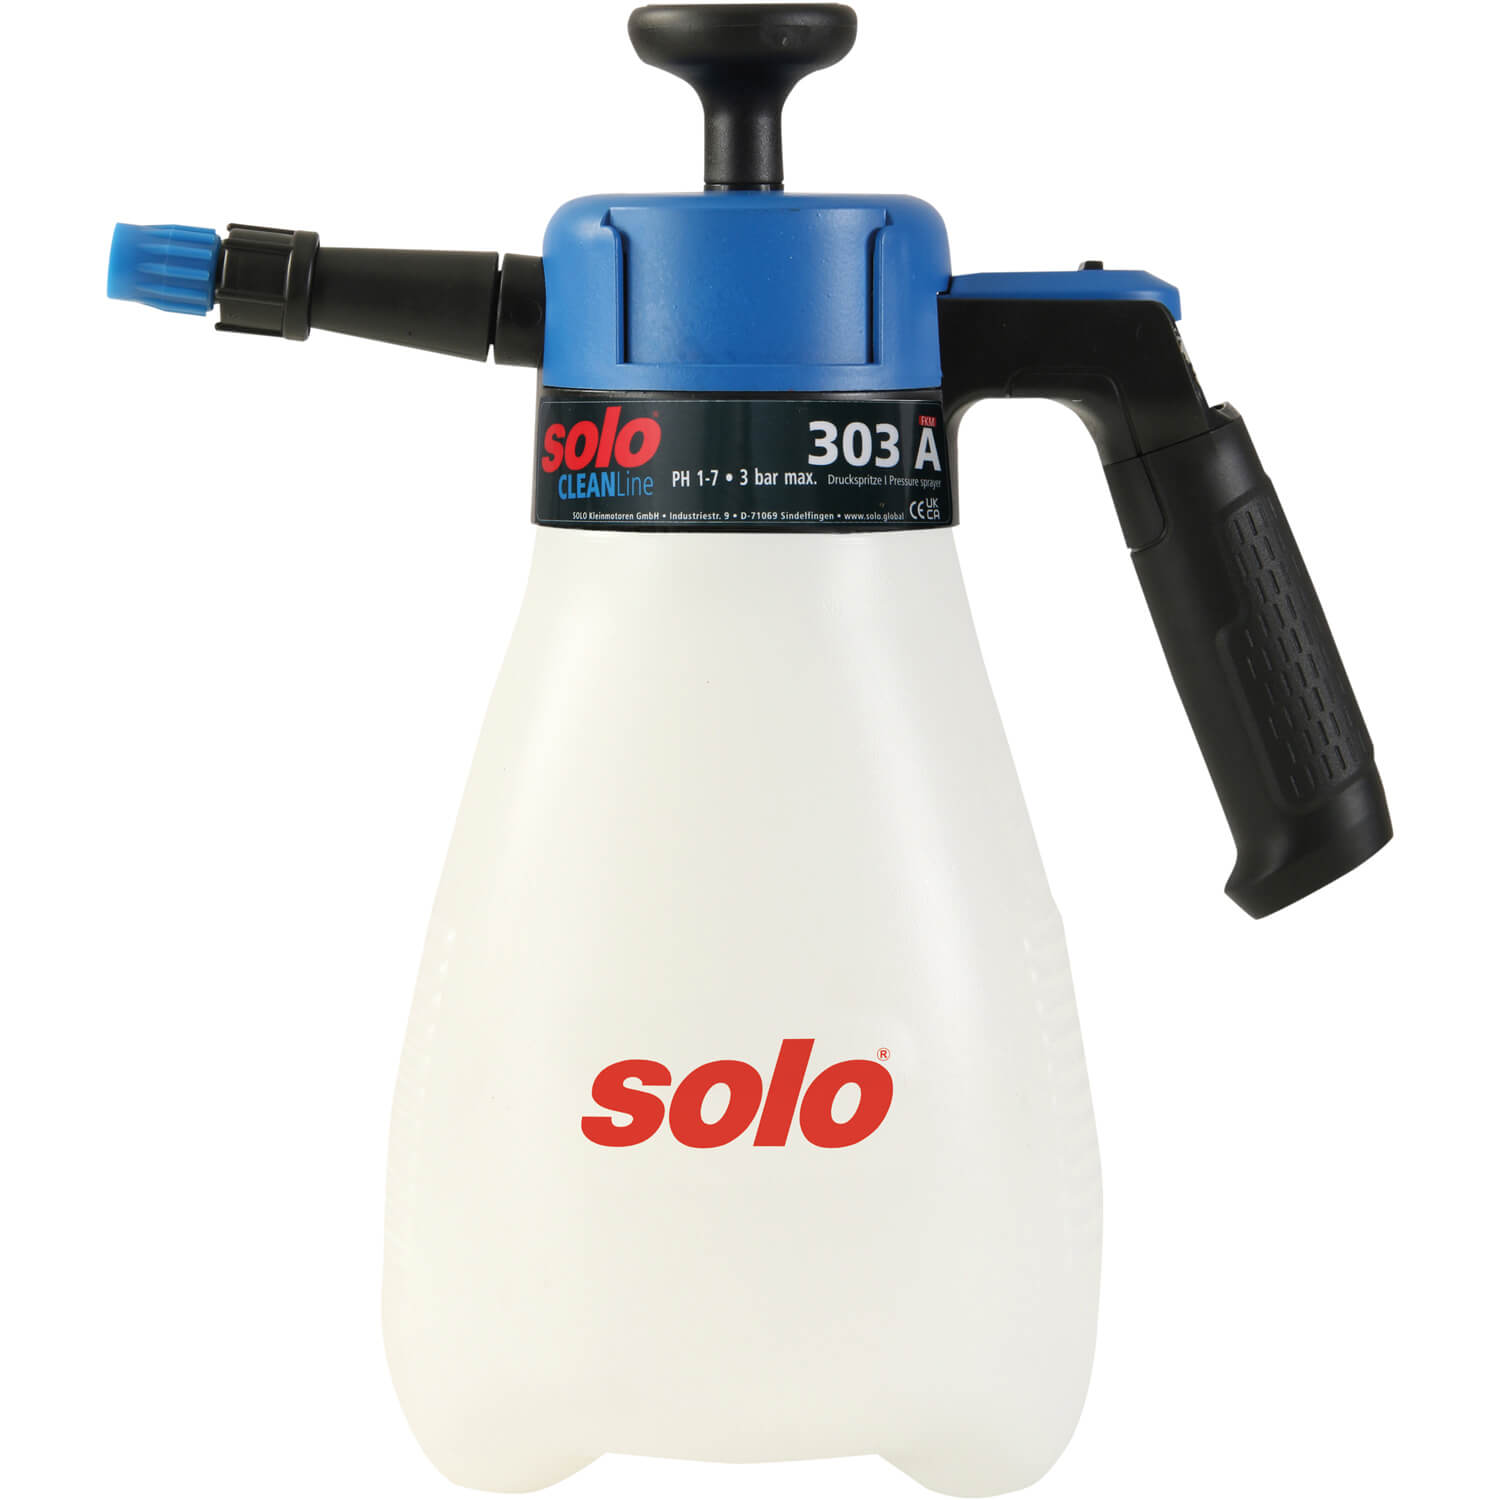 Обприскувач ручний SOLO, 1.25 л, поршневий, тиск 3 бар, вага 0.45 кг | solo 303A